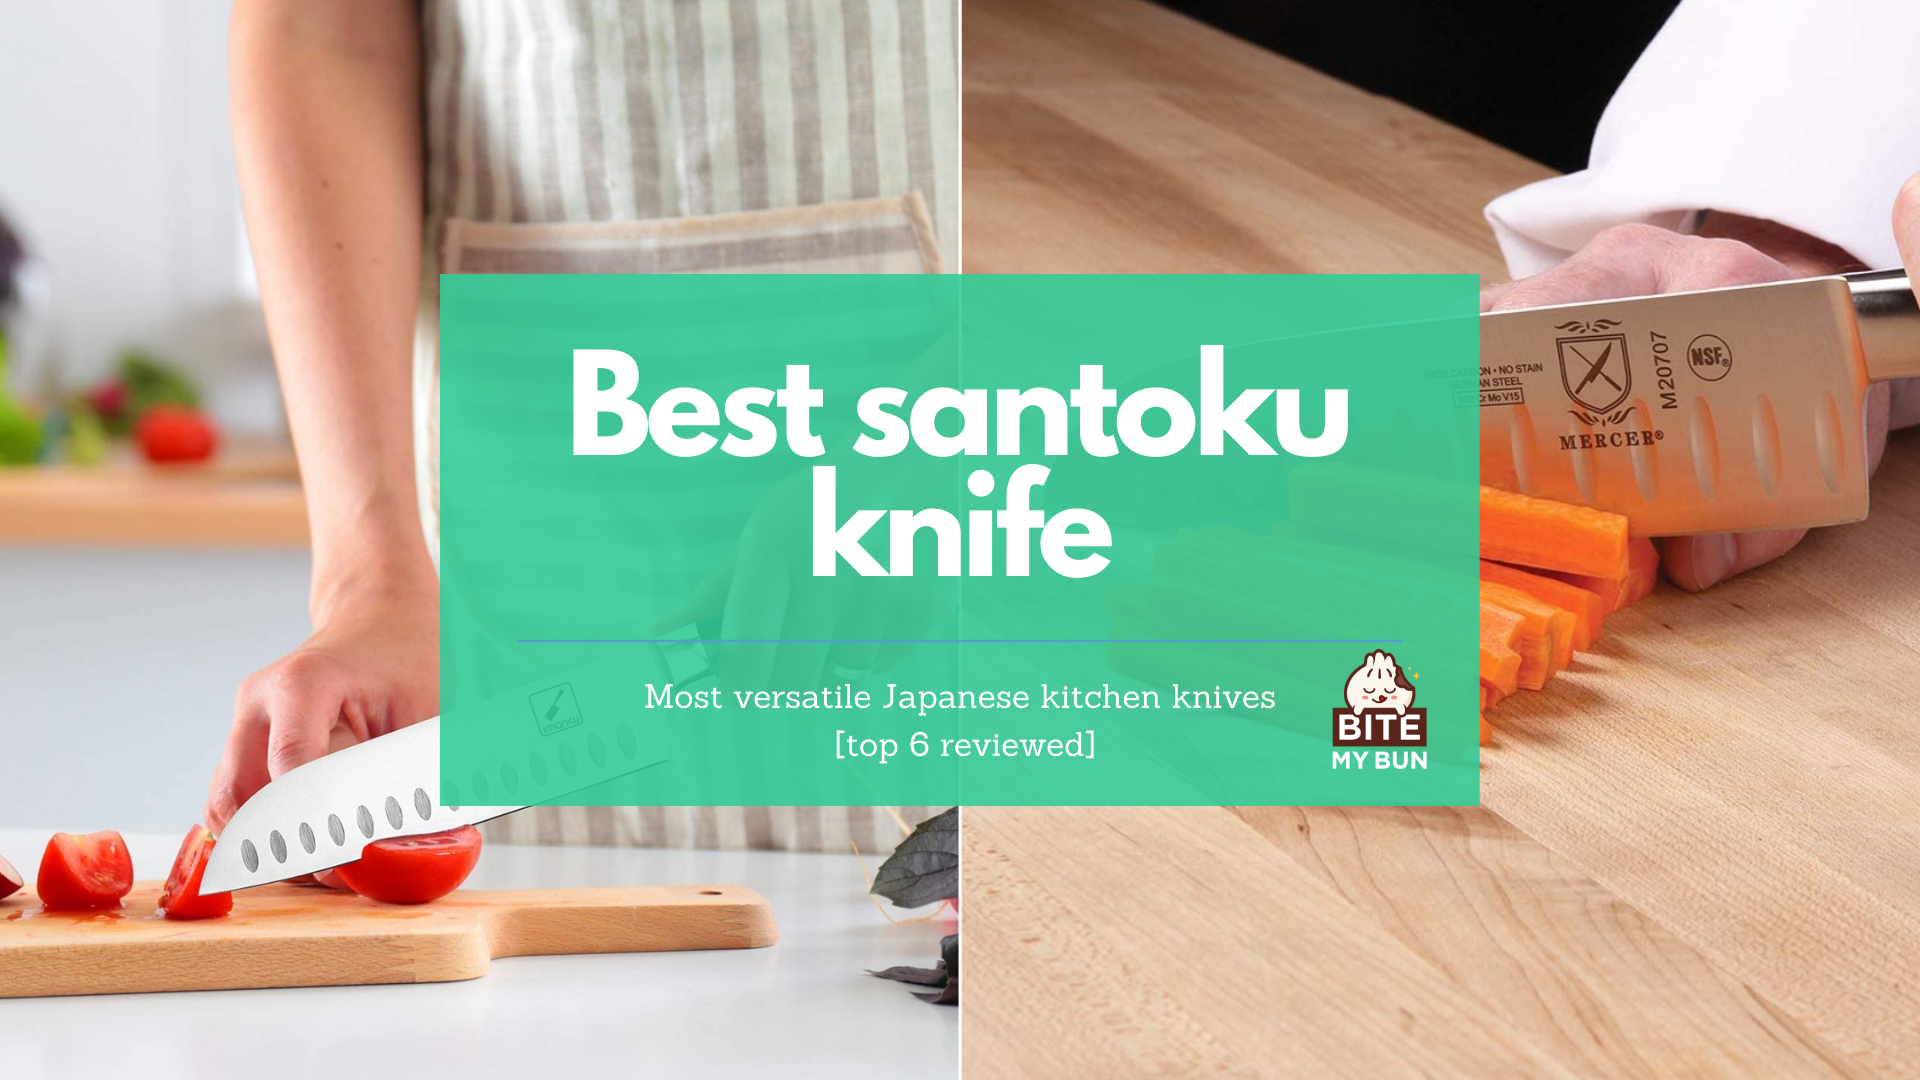 Nejlepší santoku nůž | Nejuniverzálnější japonské kuchyňské nože [nejlepších 6 recenzovaných]